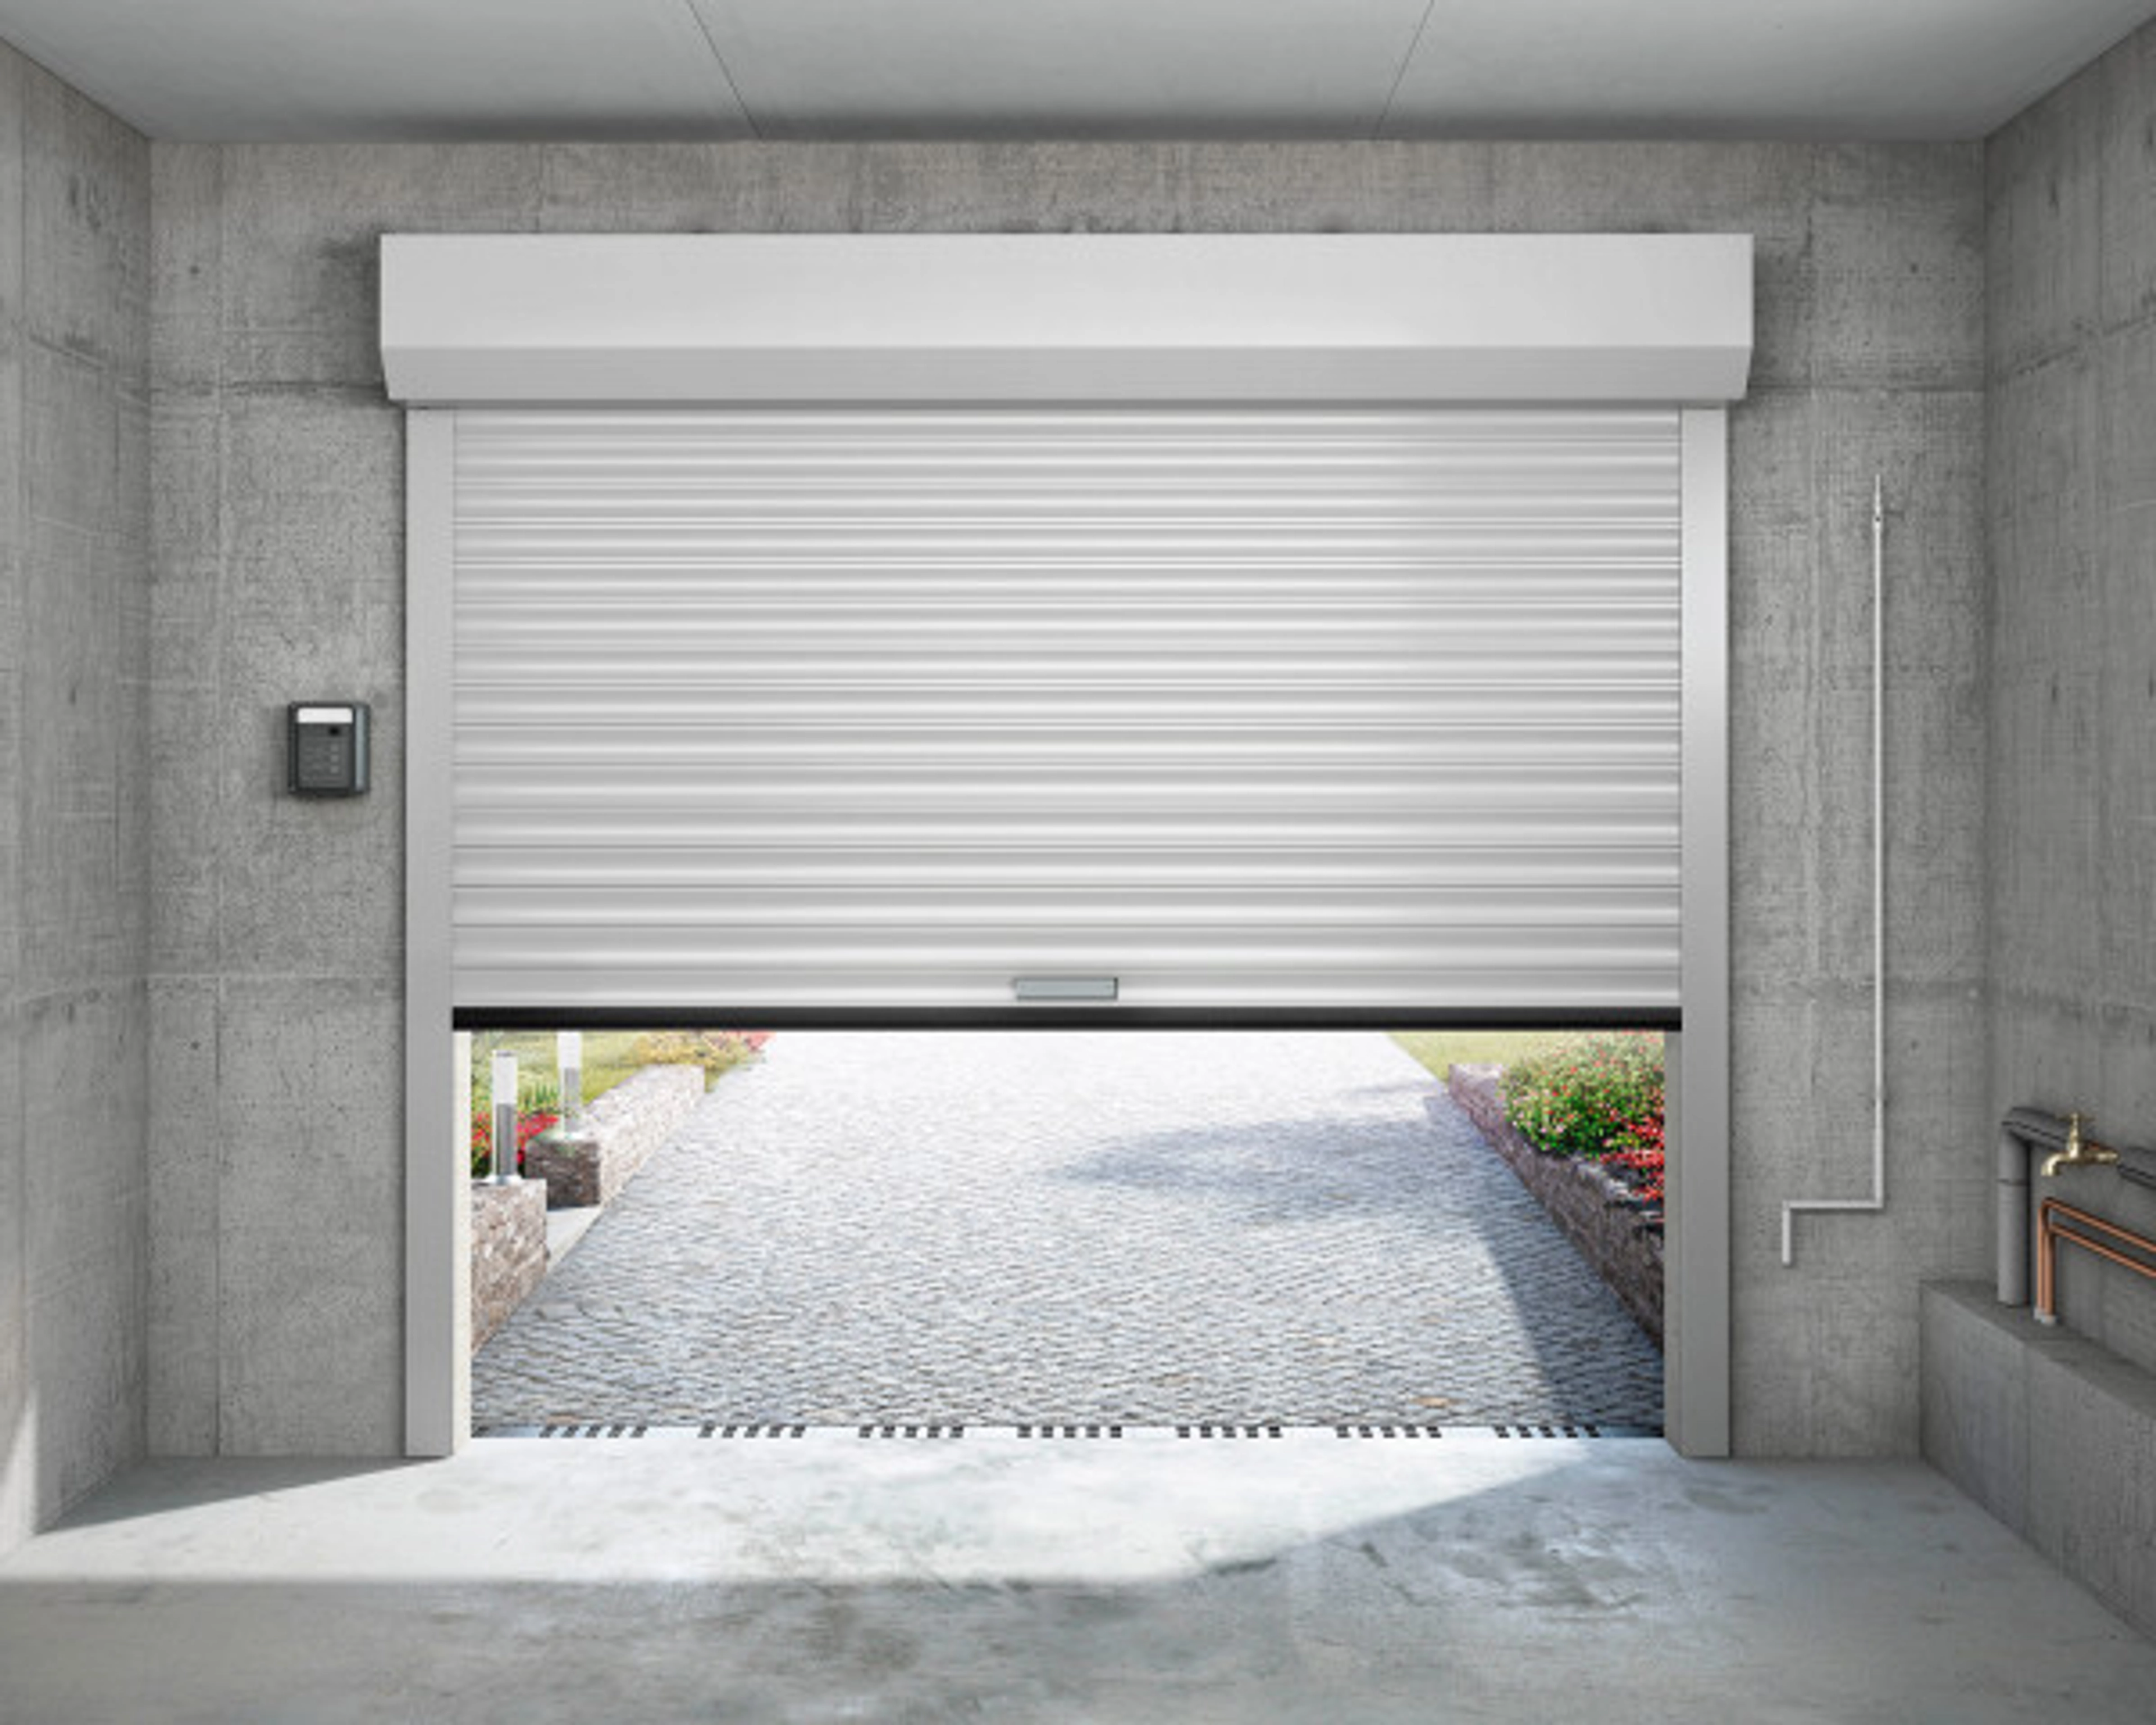 Comment isoler une porte de garage enroulable ?